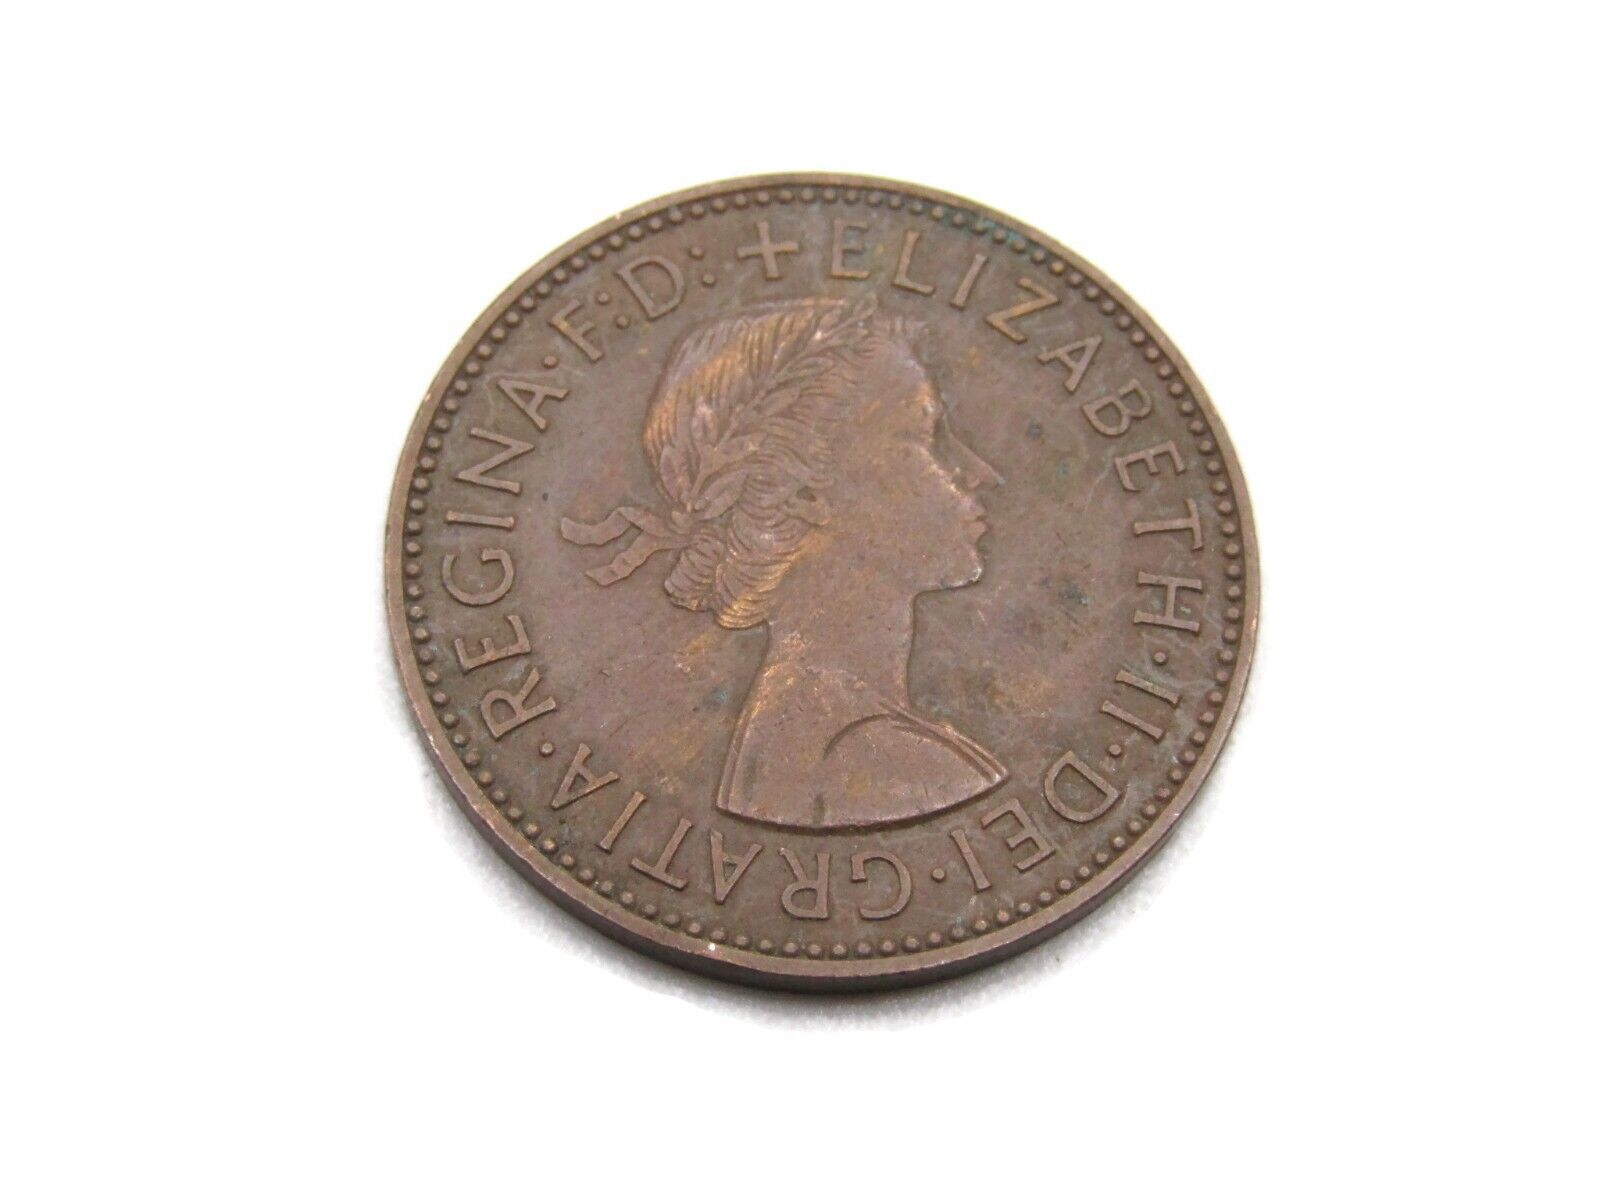 1958 Half Penny Elizabeth II Dei Gratia Regina Coin Gold Tone